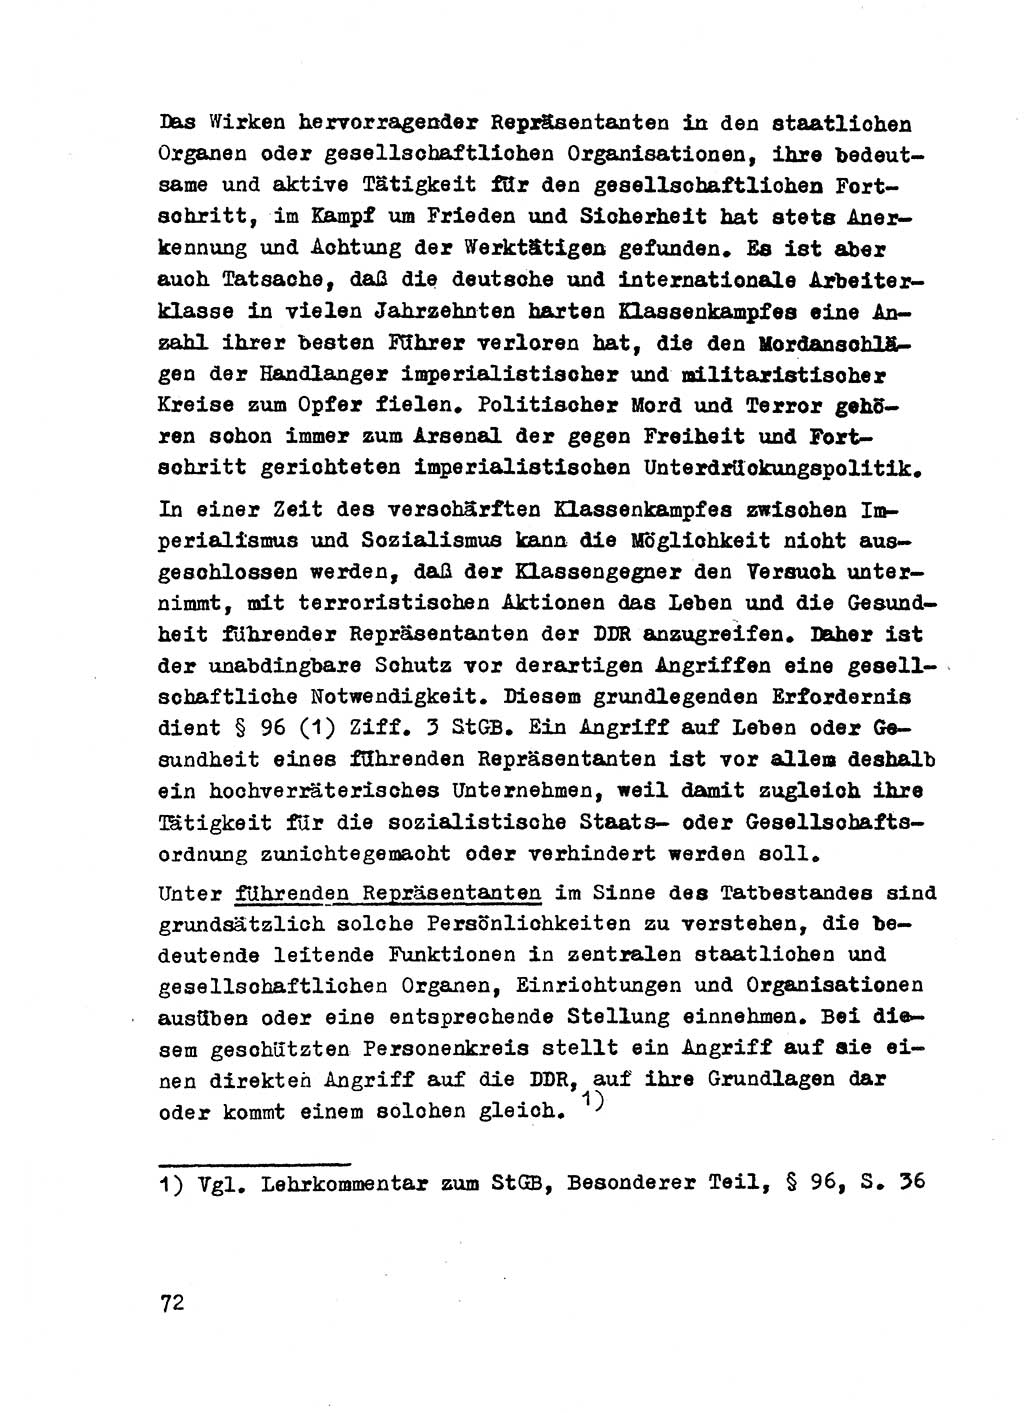 Strafrecht der DDR (Deutsche Demokratische Republik), Besonderer Teil, Lehrmaterial, Heft 2 1969, Seite 72 (Strafr. DDR BT Lehrmat. H. 2 1969, S. 72)